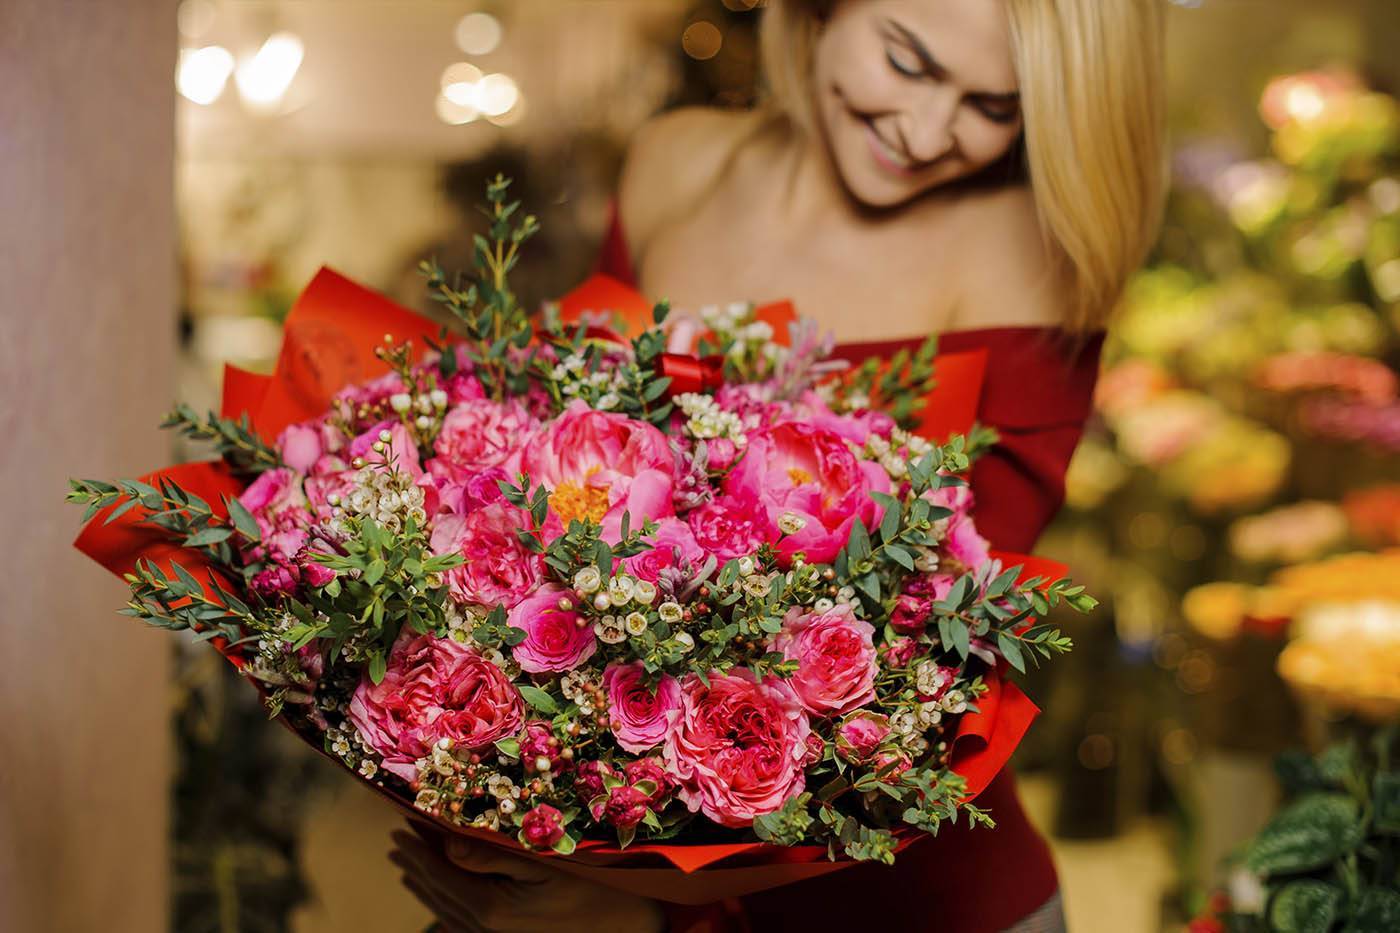 Historias de Amor Narradas con Flores: Desde Propuestas hasta Aniversarios